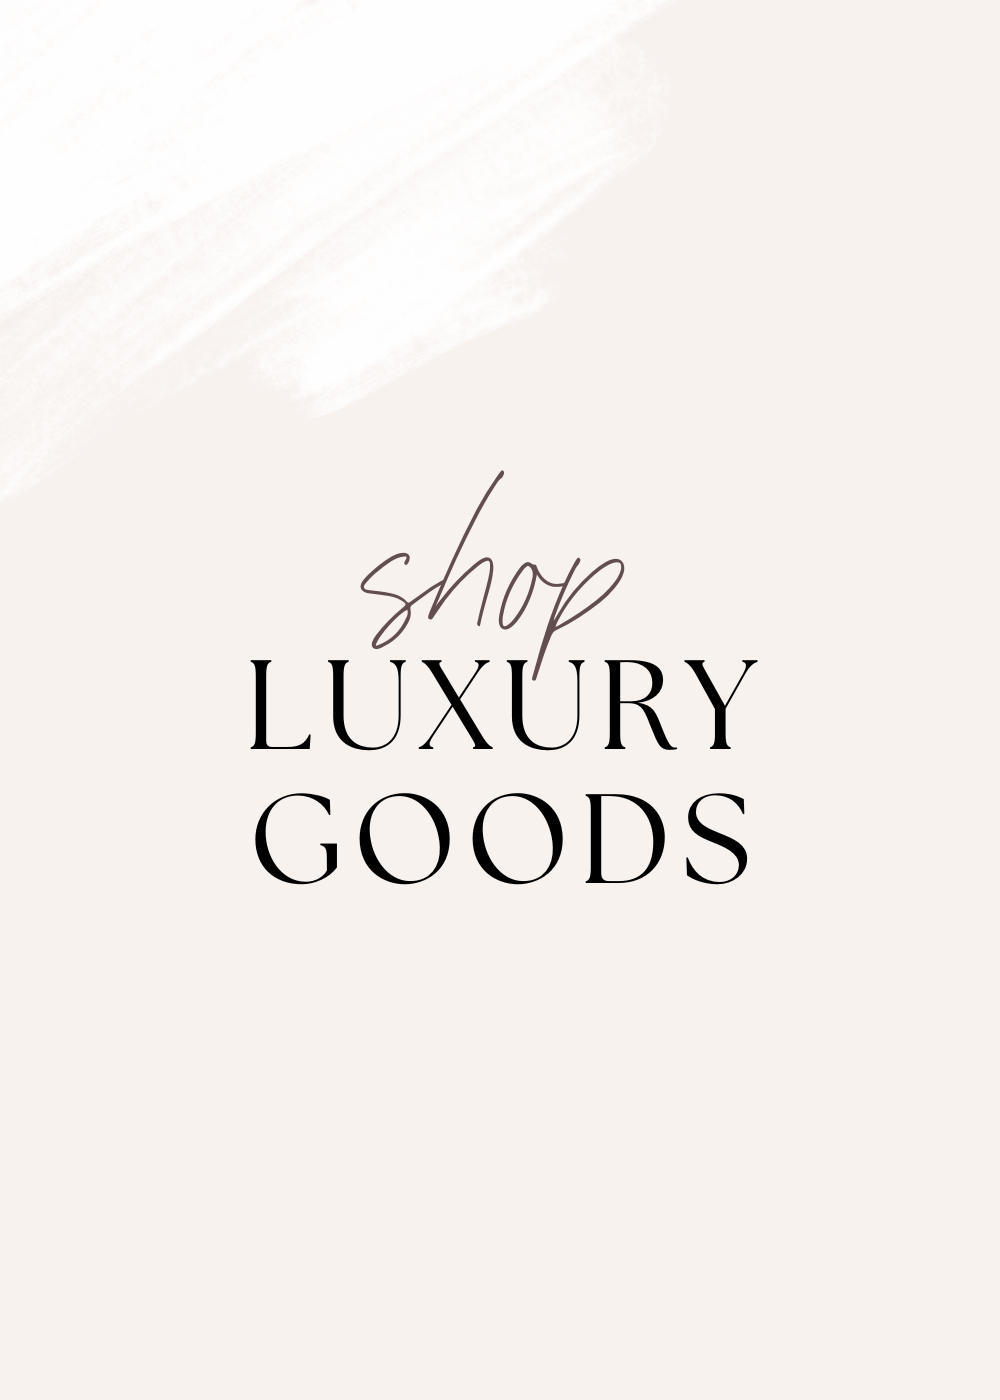 The Luxury Goods